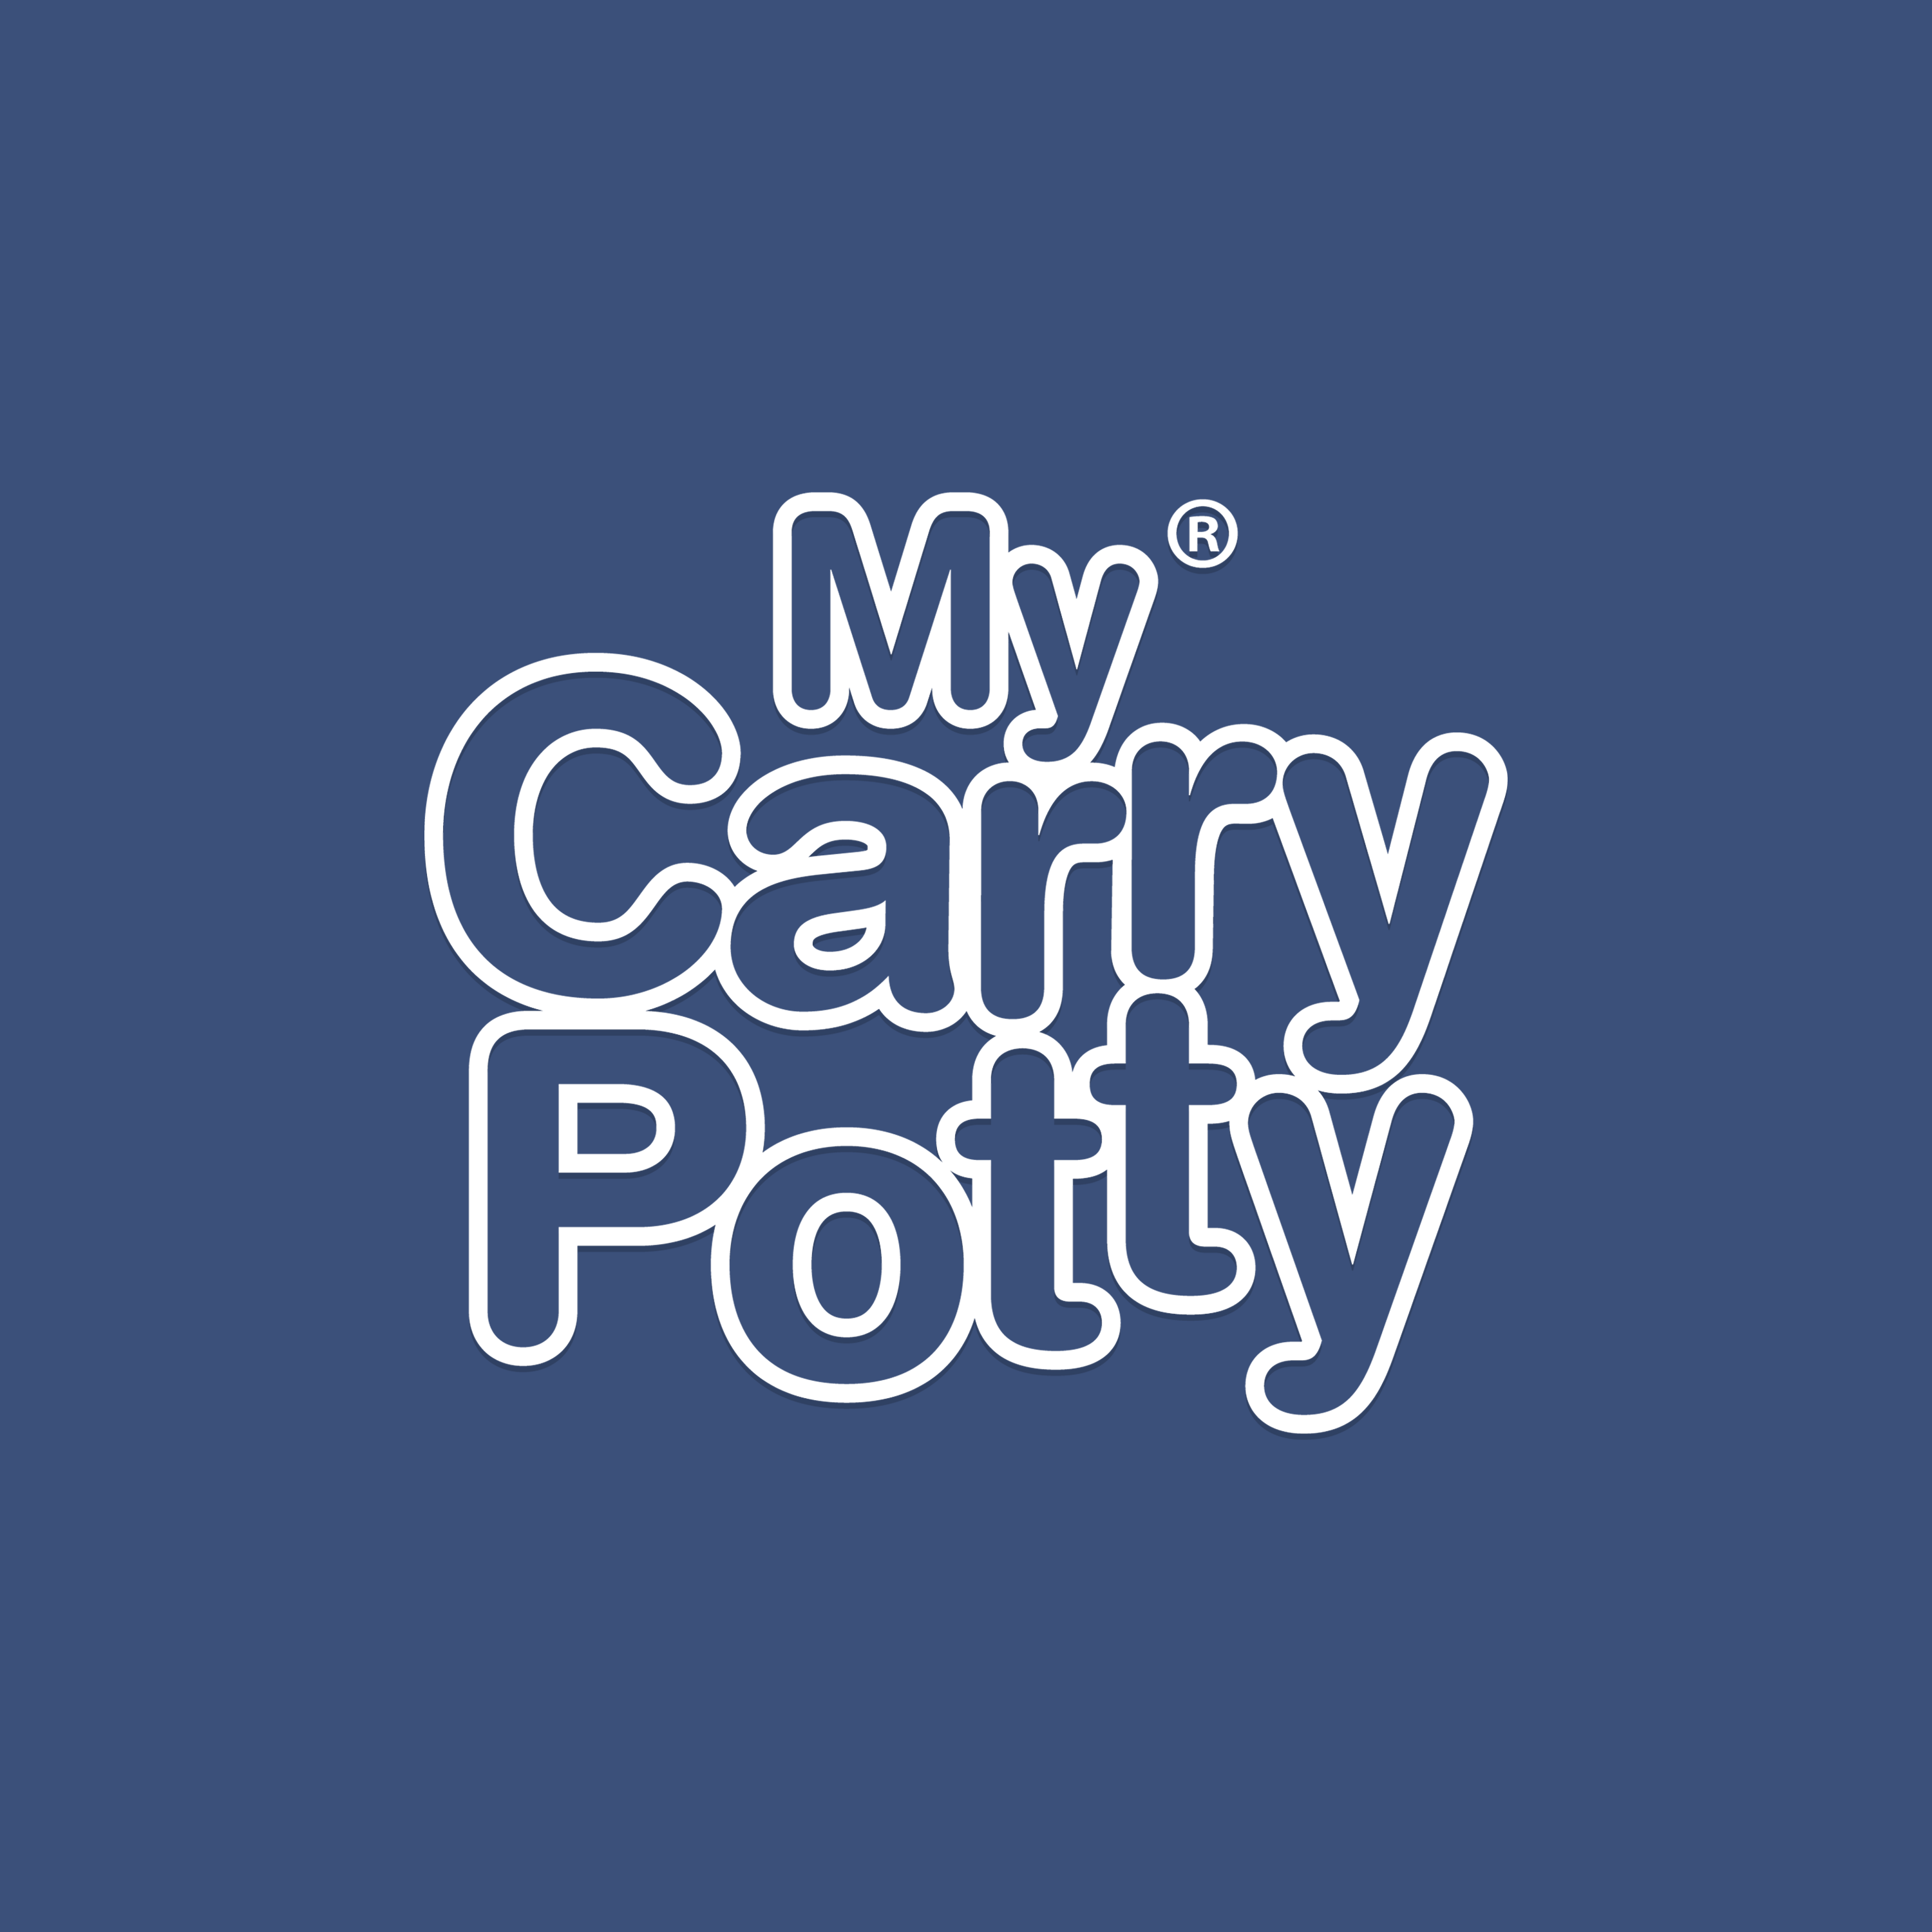 My Carry Potty